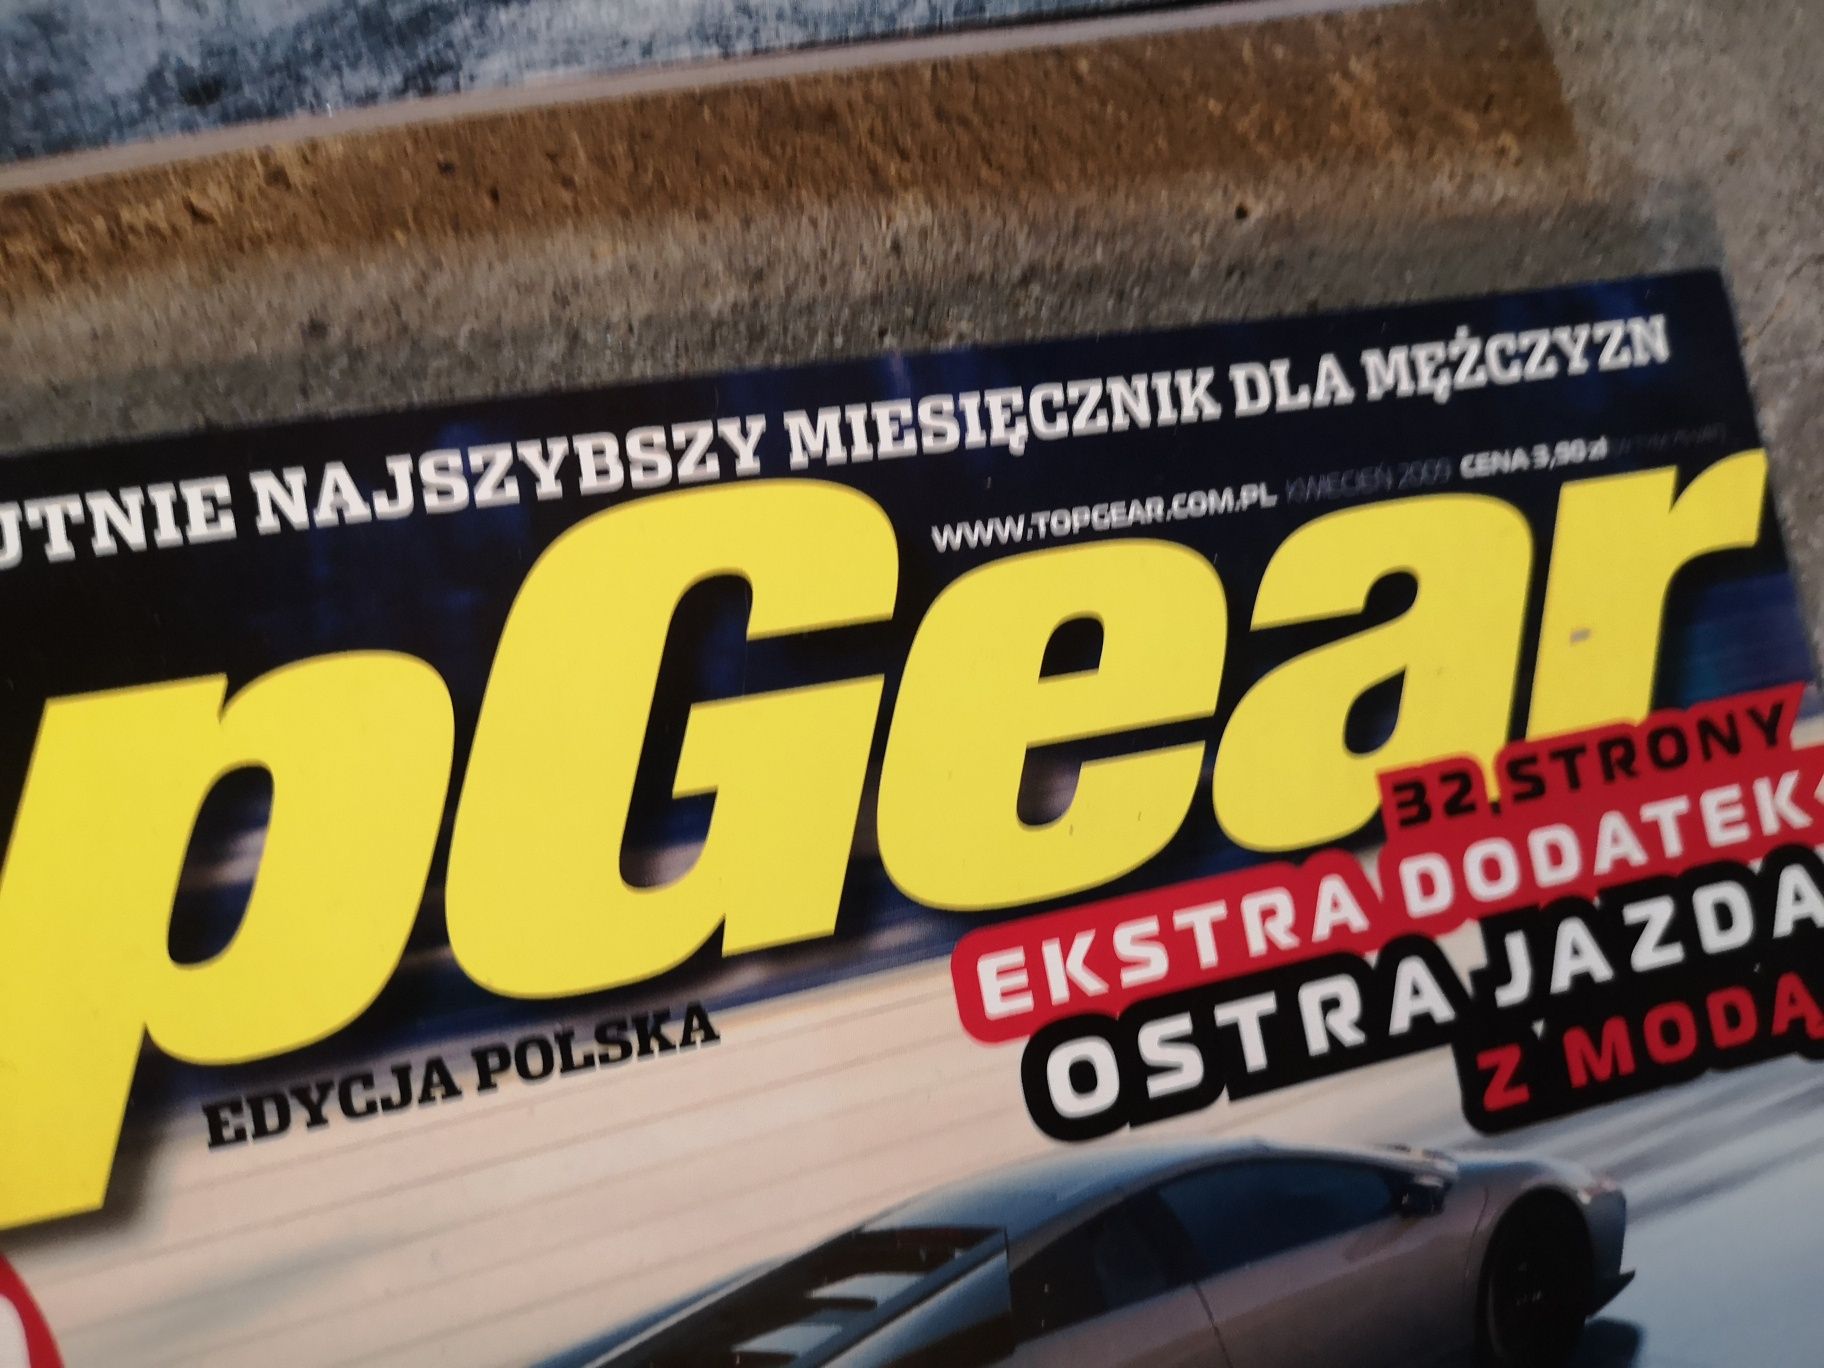 Czasopismo Top Gear 11 sztuk z 2009 roku